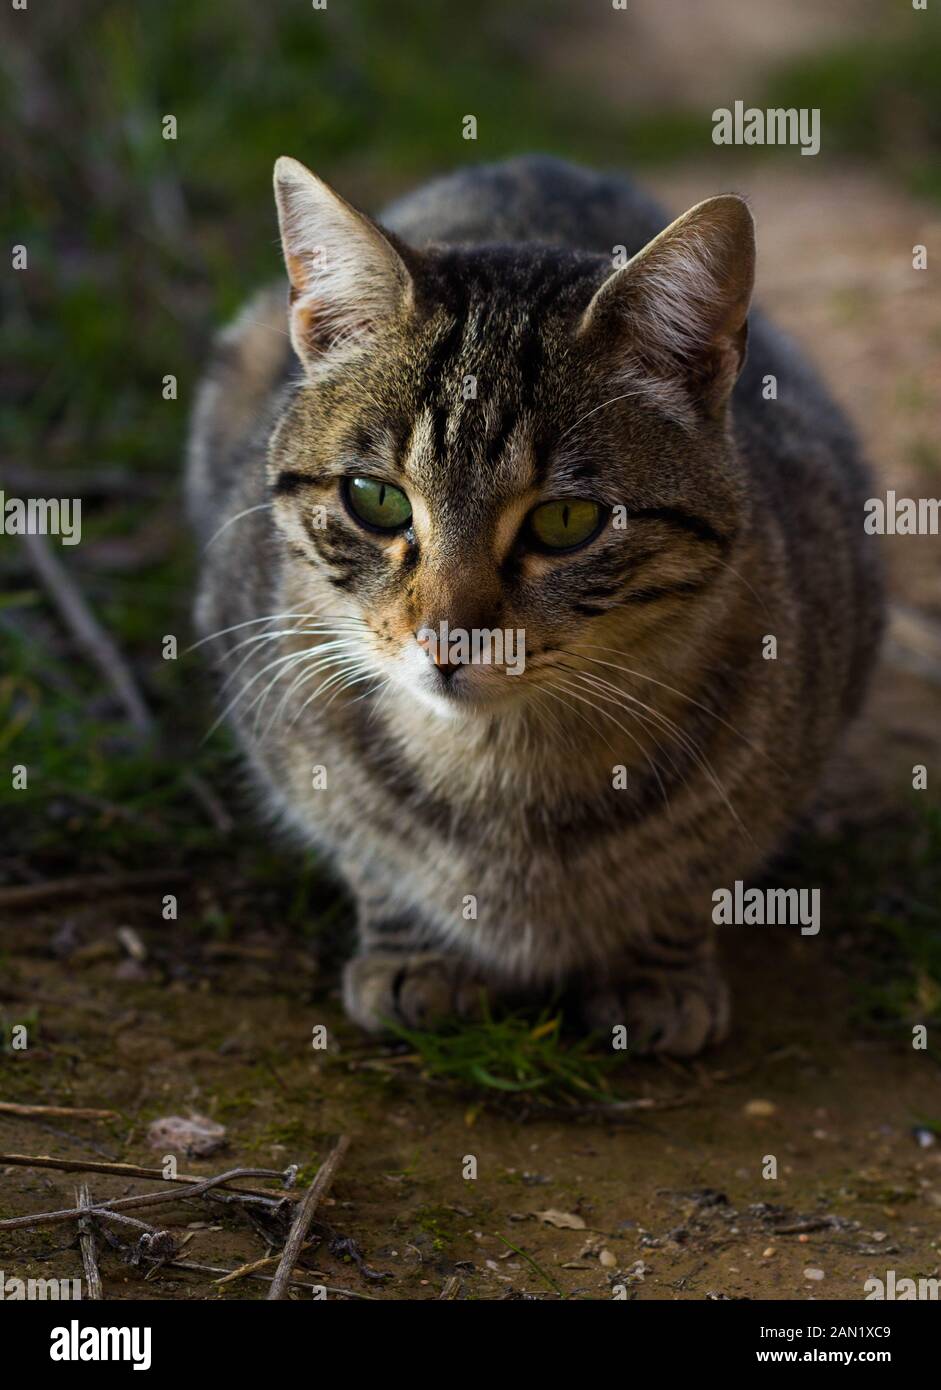 gatto selvaggio che guarda avanti, occhi verdi Foto Stock